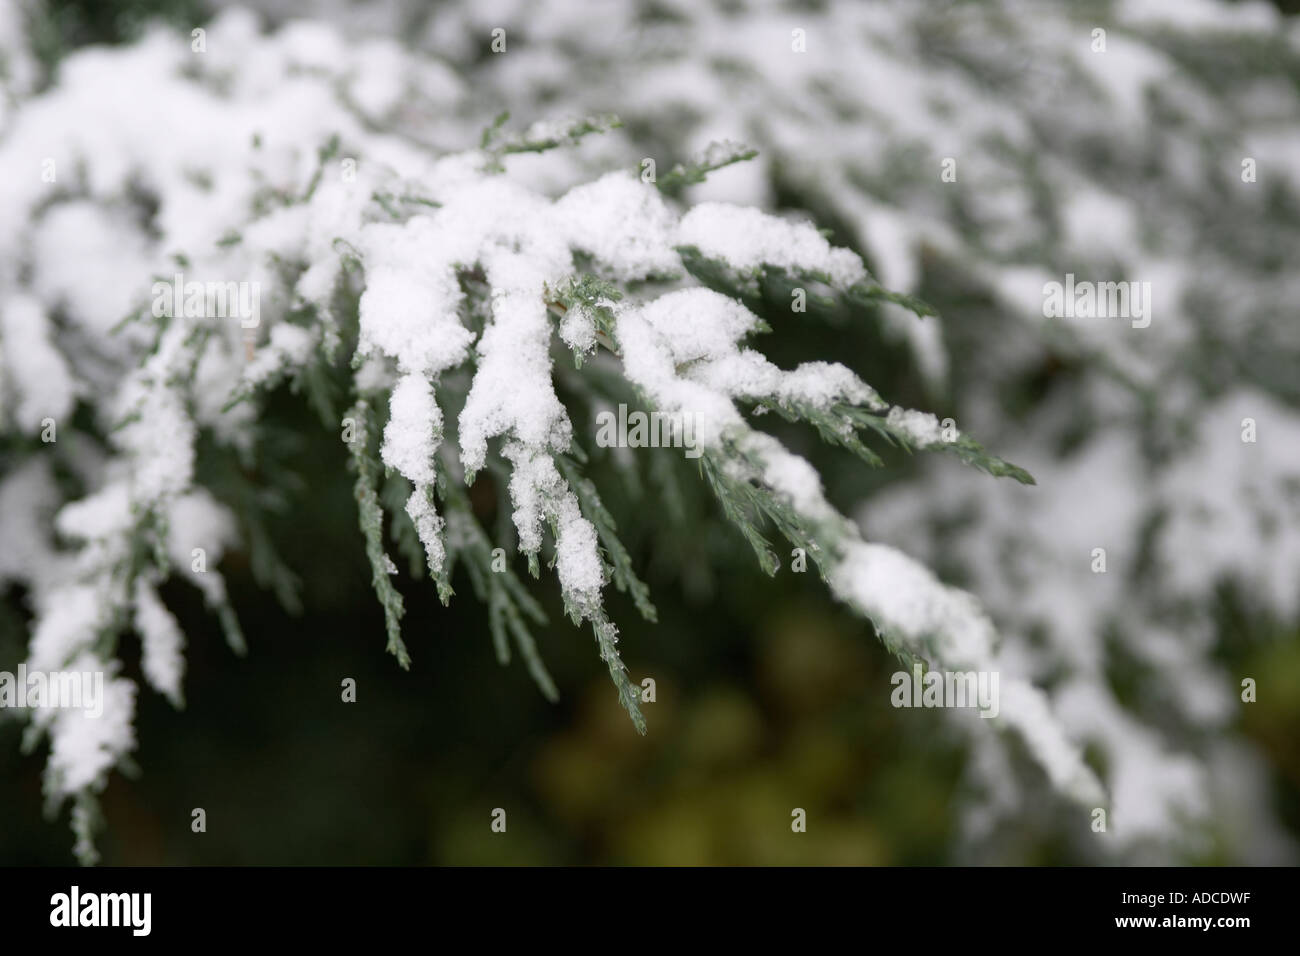 Landscape shot of freshly fallen snow on green fern Stock Photo